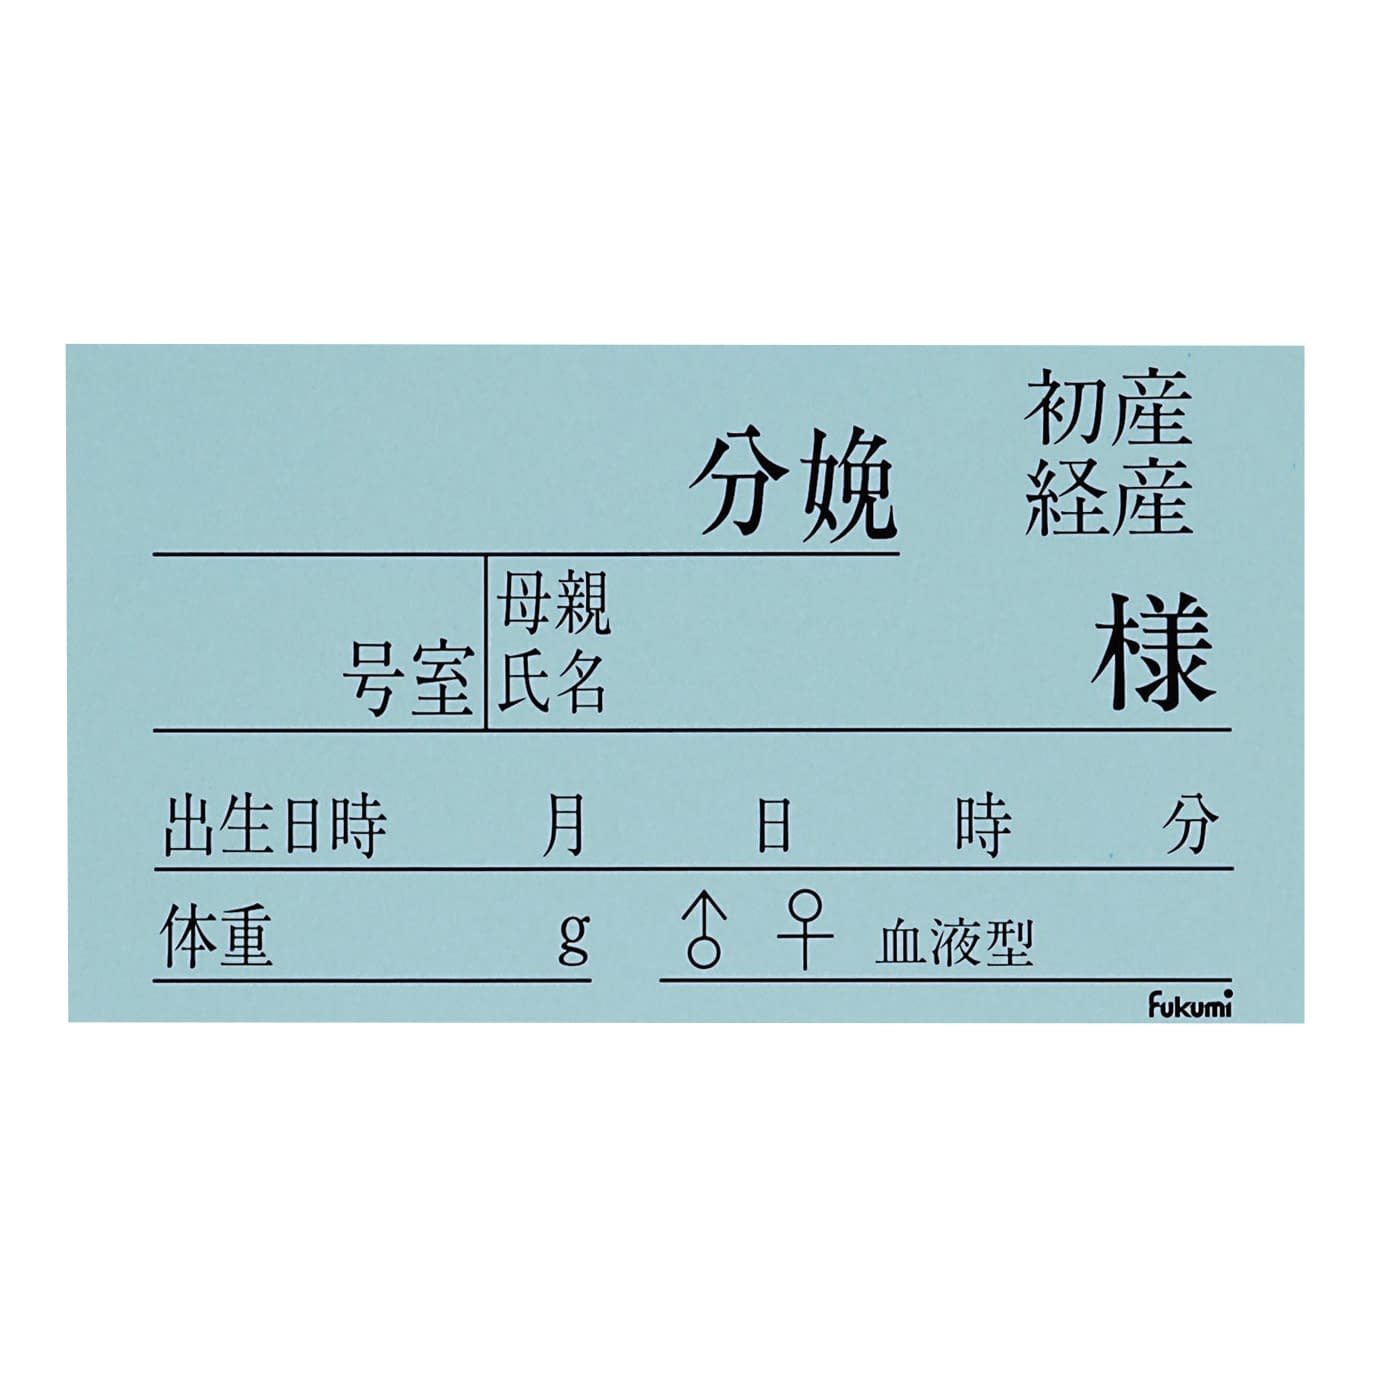 (20-5230-00)ネームカード（紙）新生児用 FK-90K3B(100ﾏｲｲﾘ) ﾈｰﾑｶｰﾄﾞ【1束単位】【2019年カタログ商品】